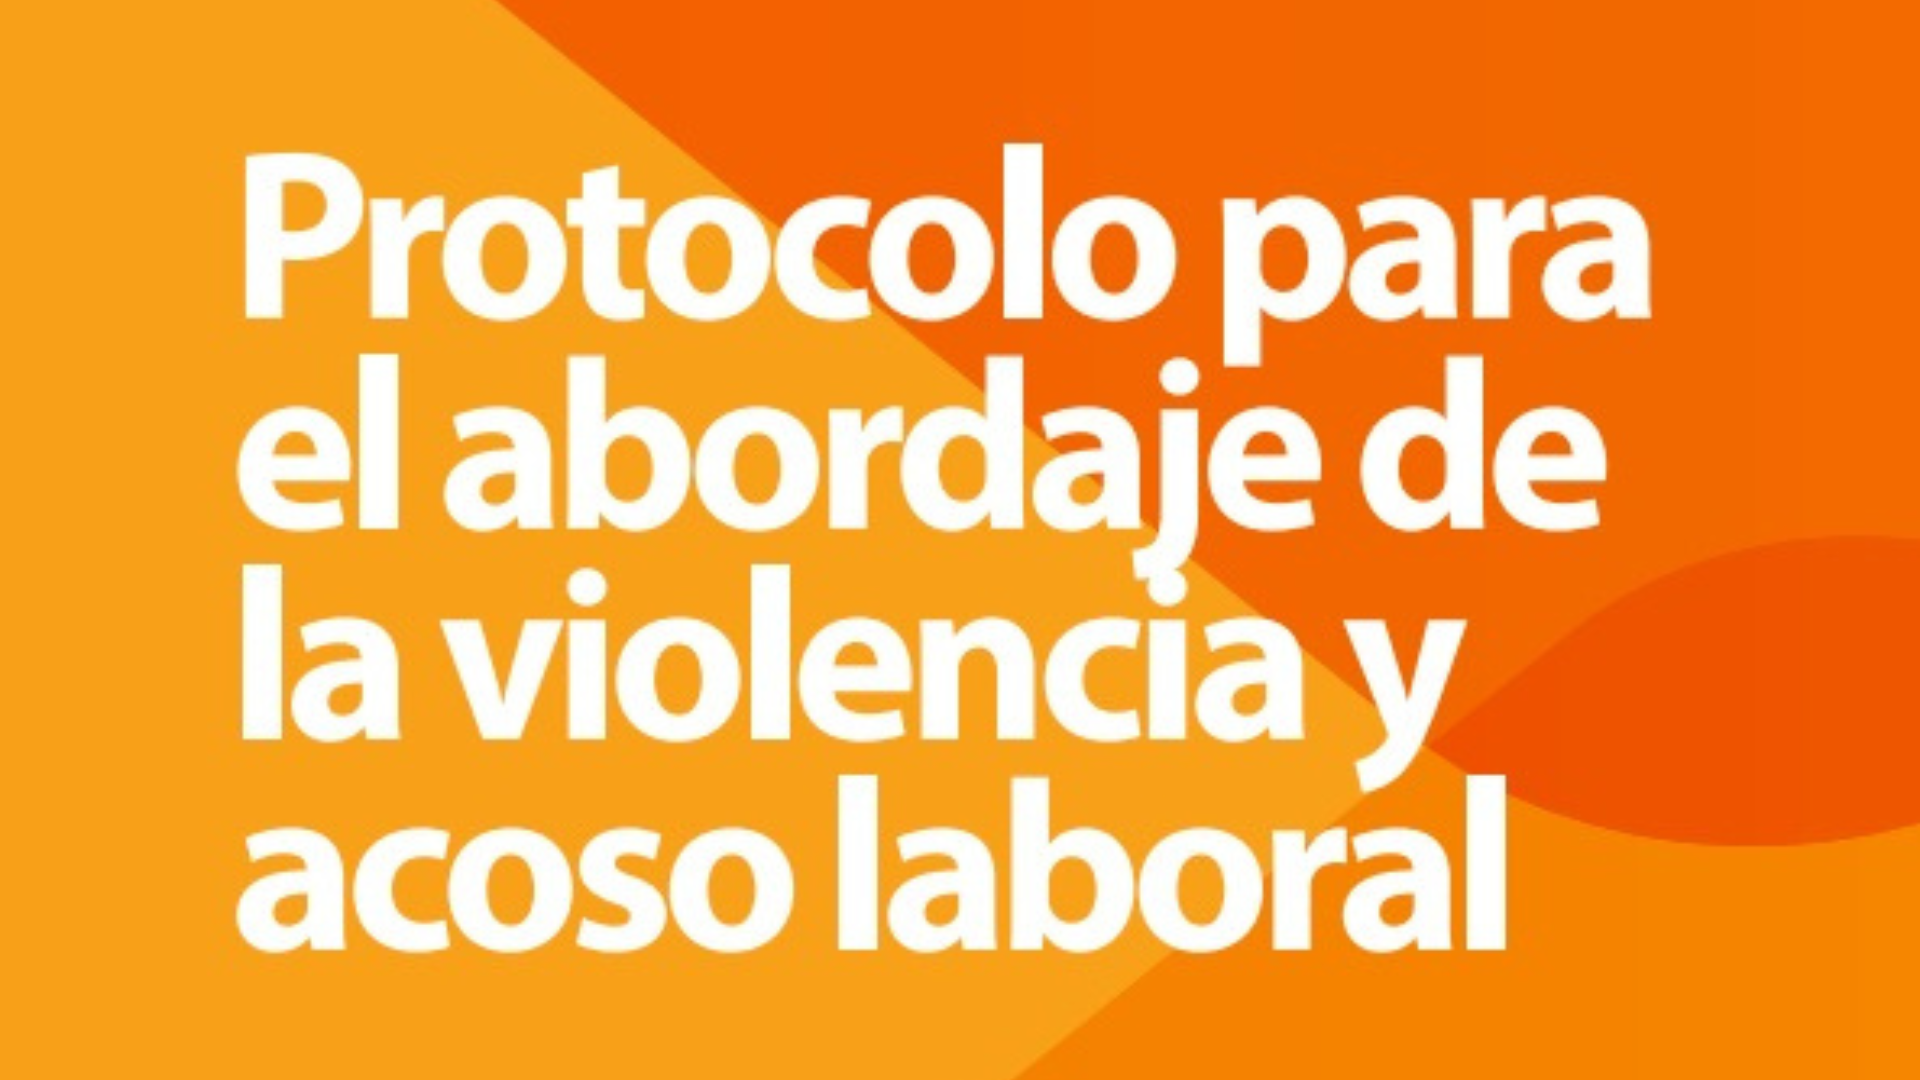 Protocolo para el abordaje de la violencia y acoso laboral